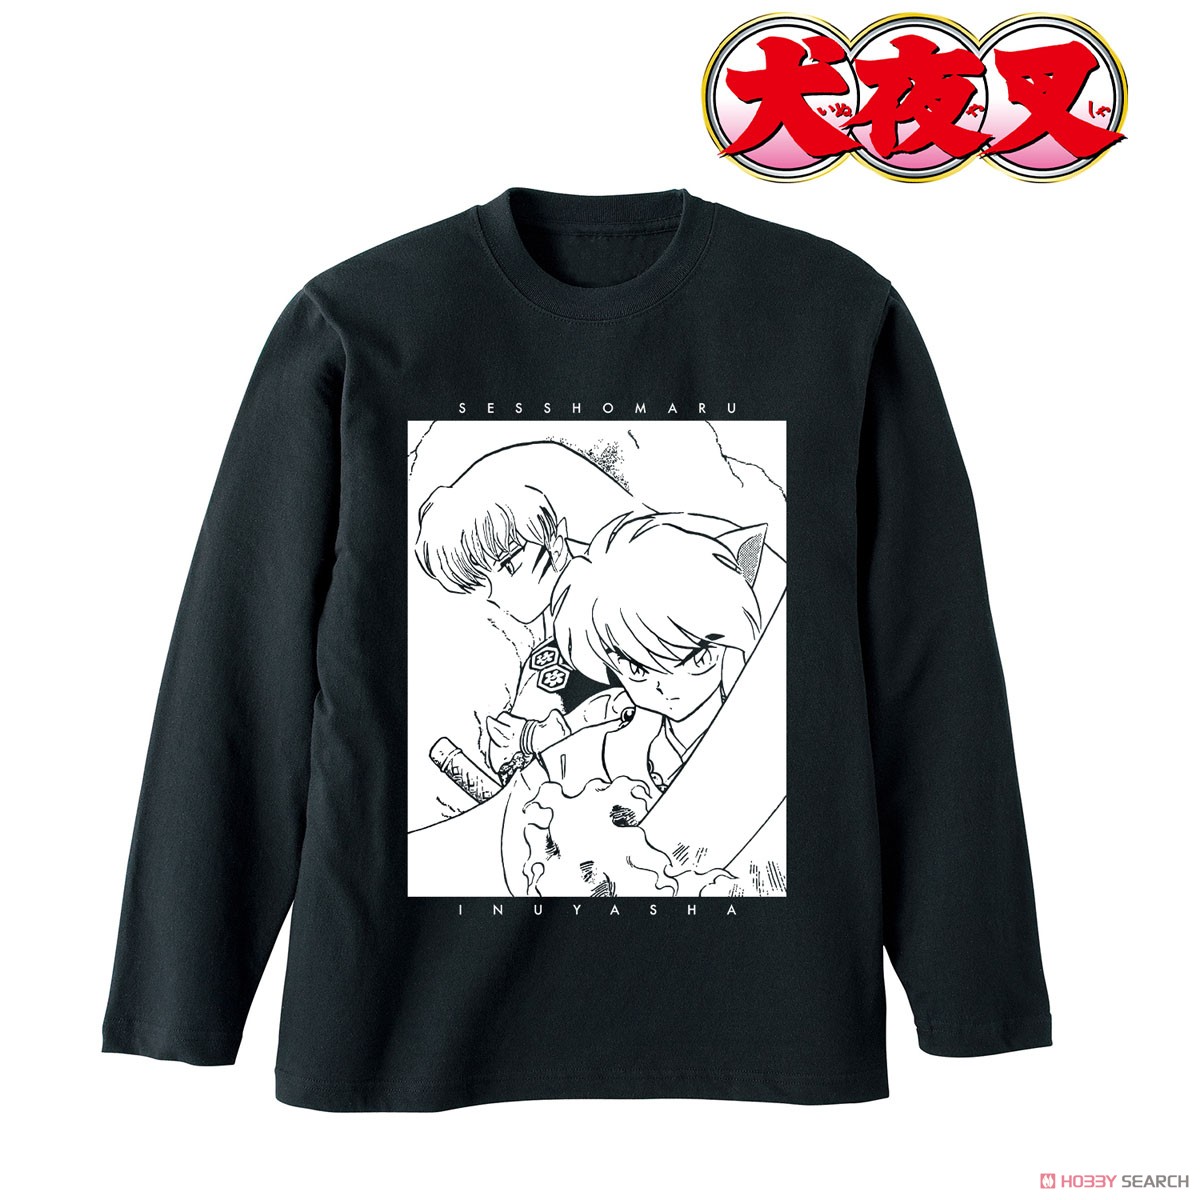 Inuyasha Inuyasha & Sesshomaru Long T-Shirts Unisex XL (Anime Toy) Item picture1